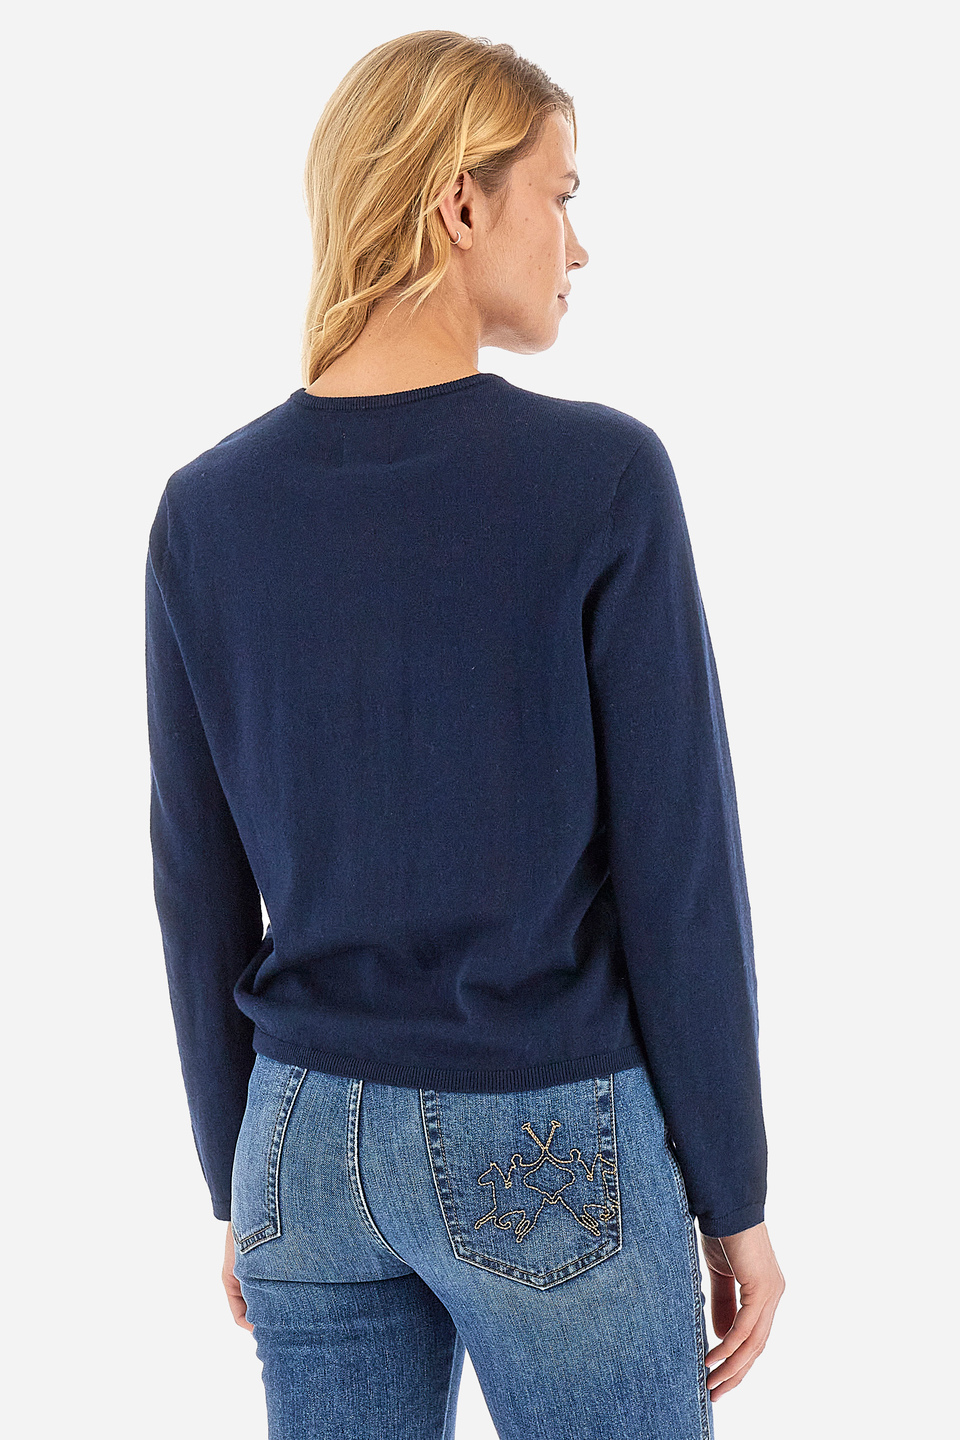 Women’s crew neck sweater - Wileen | La Martina - Official Online Shop